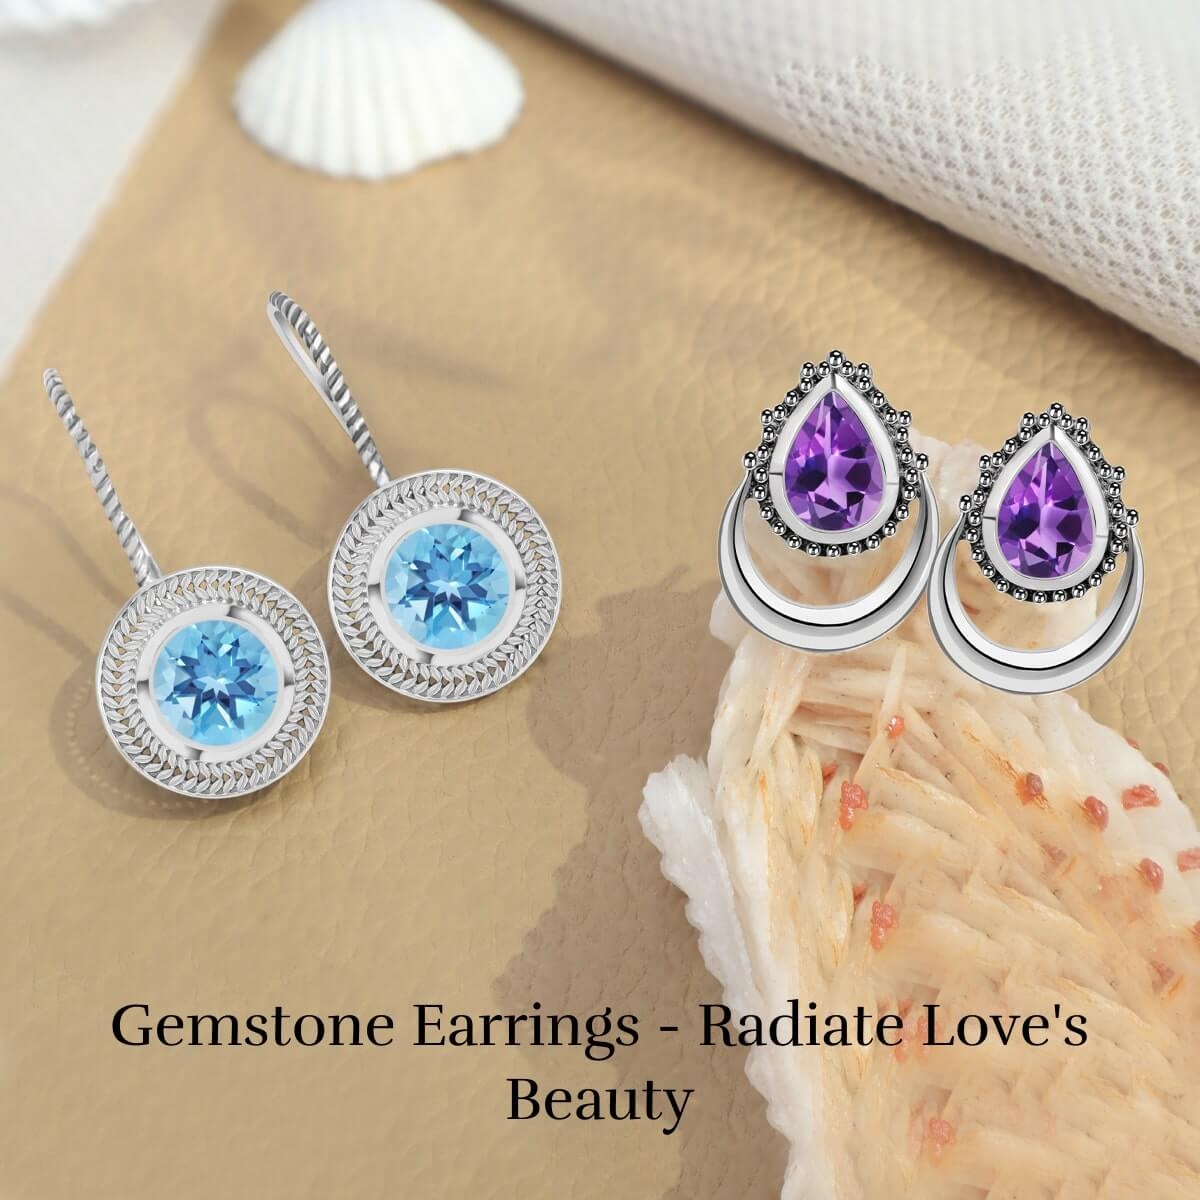 Types of Gemstone Earrings